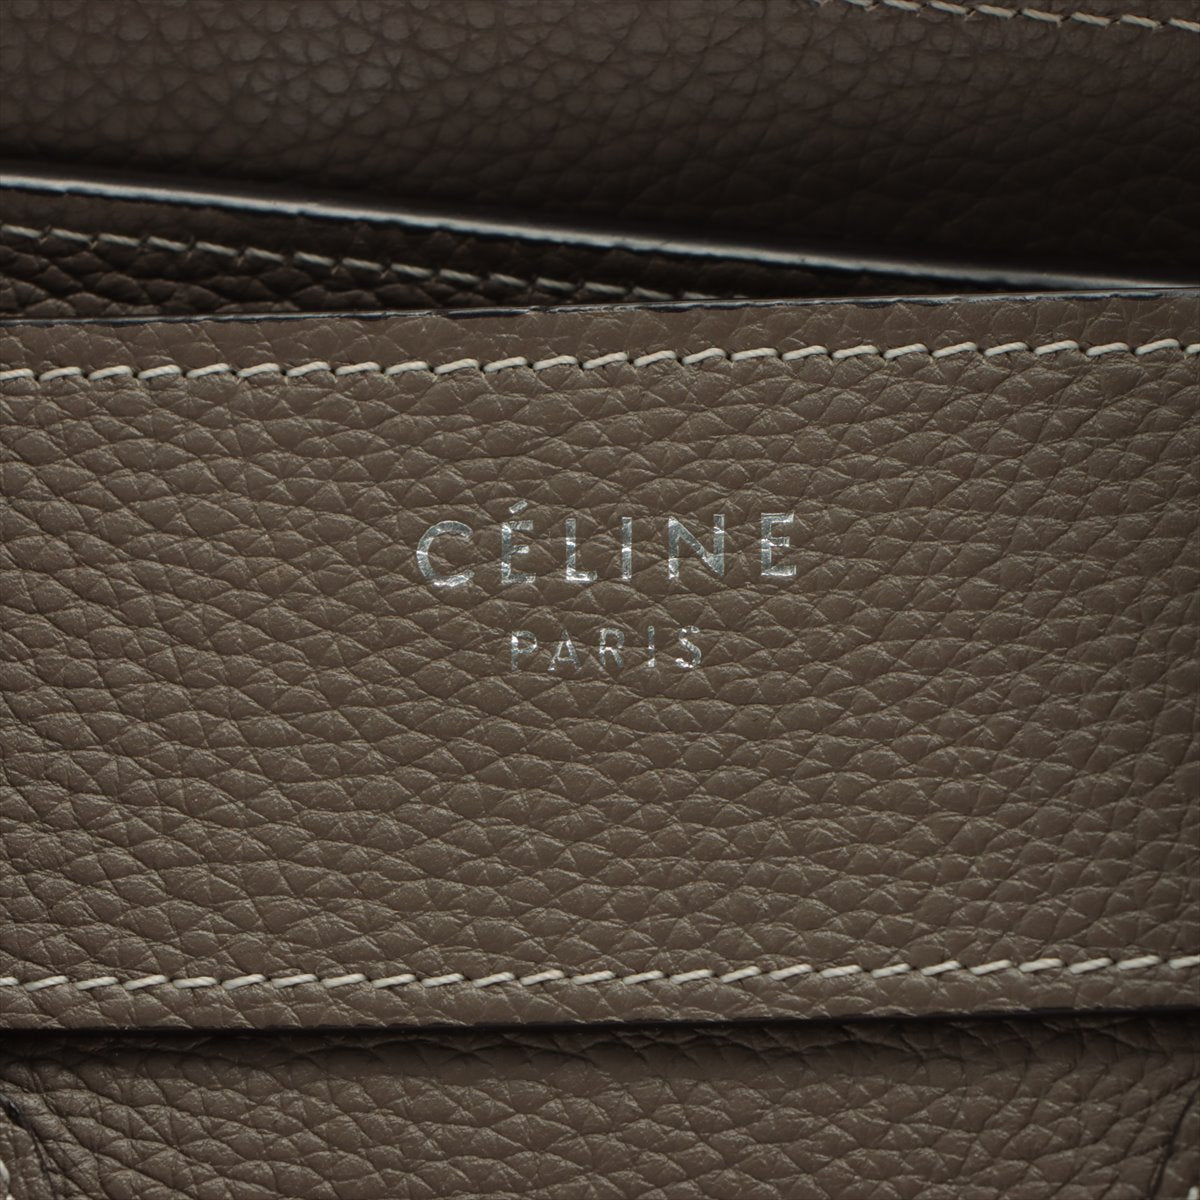 Celine Luggage Micro  Leather Handbag Gr Lagoon